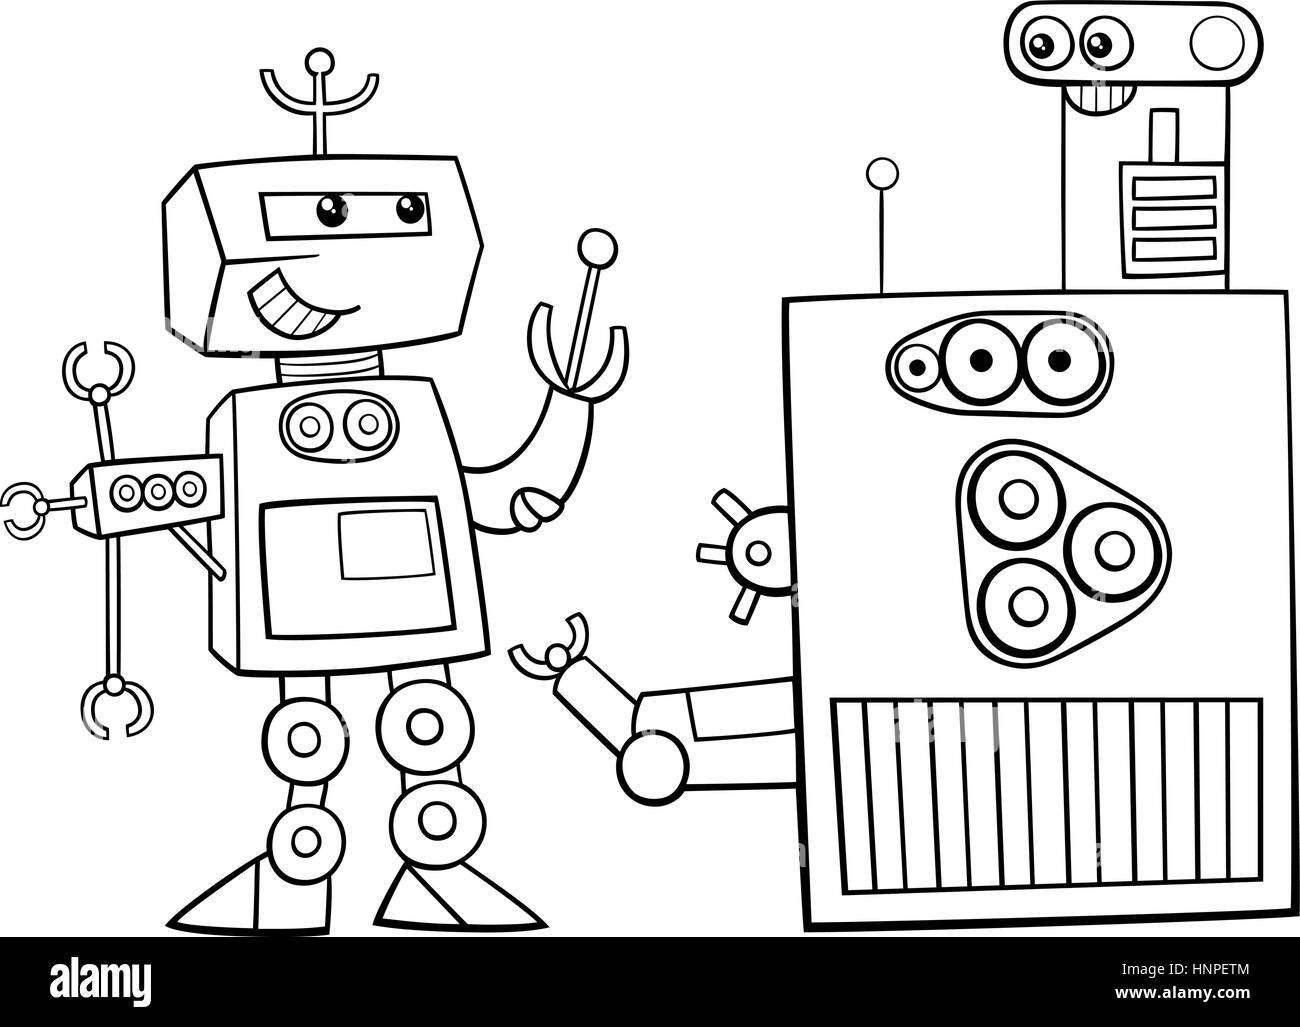 робот искусственный интеллект пазл онлайн из фото